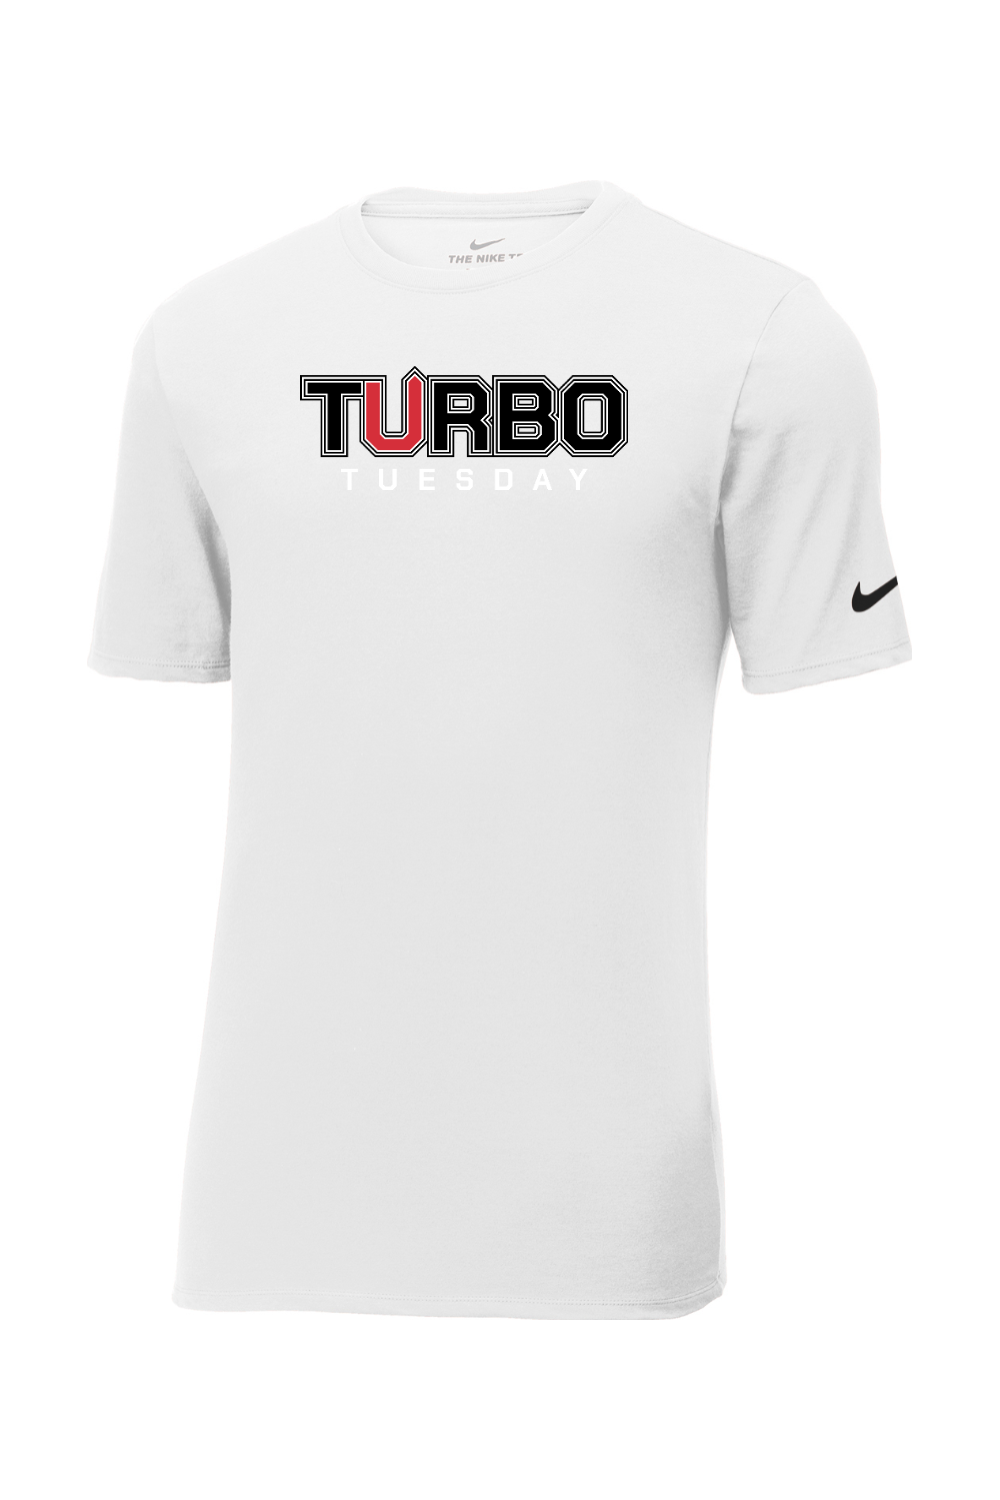 Turbo Tuesday Nike Tee